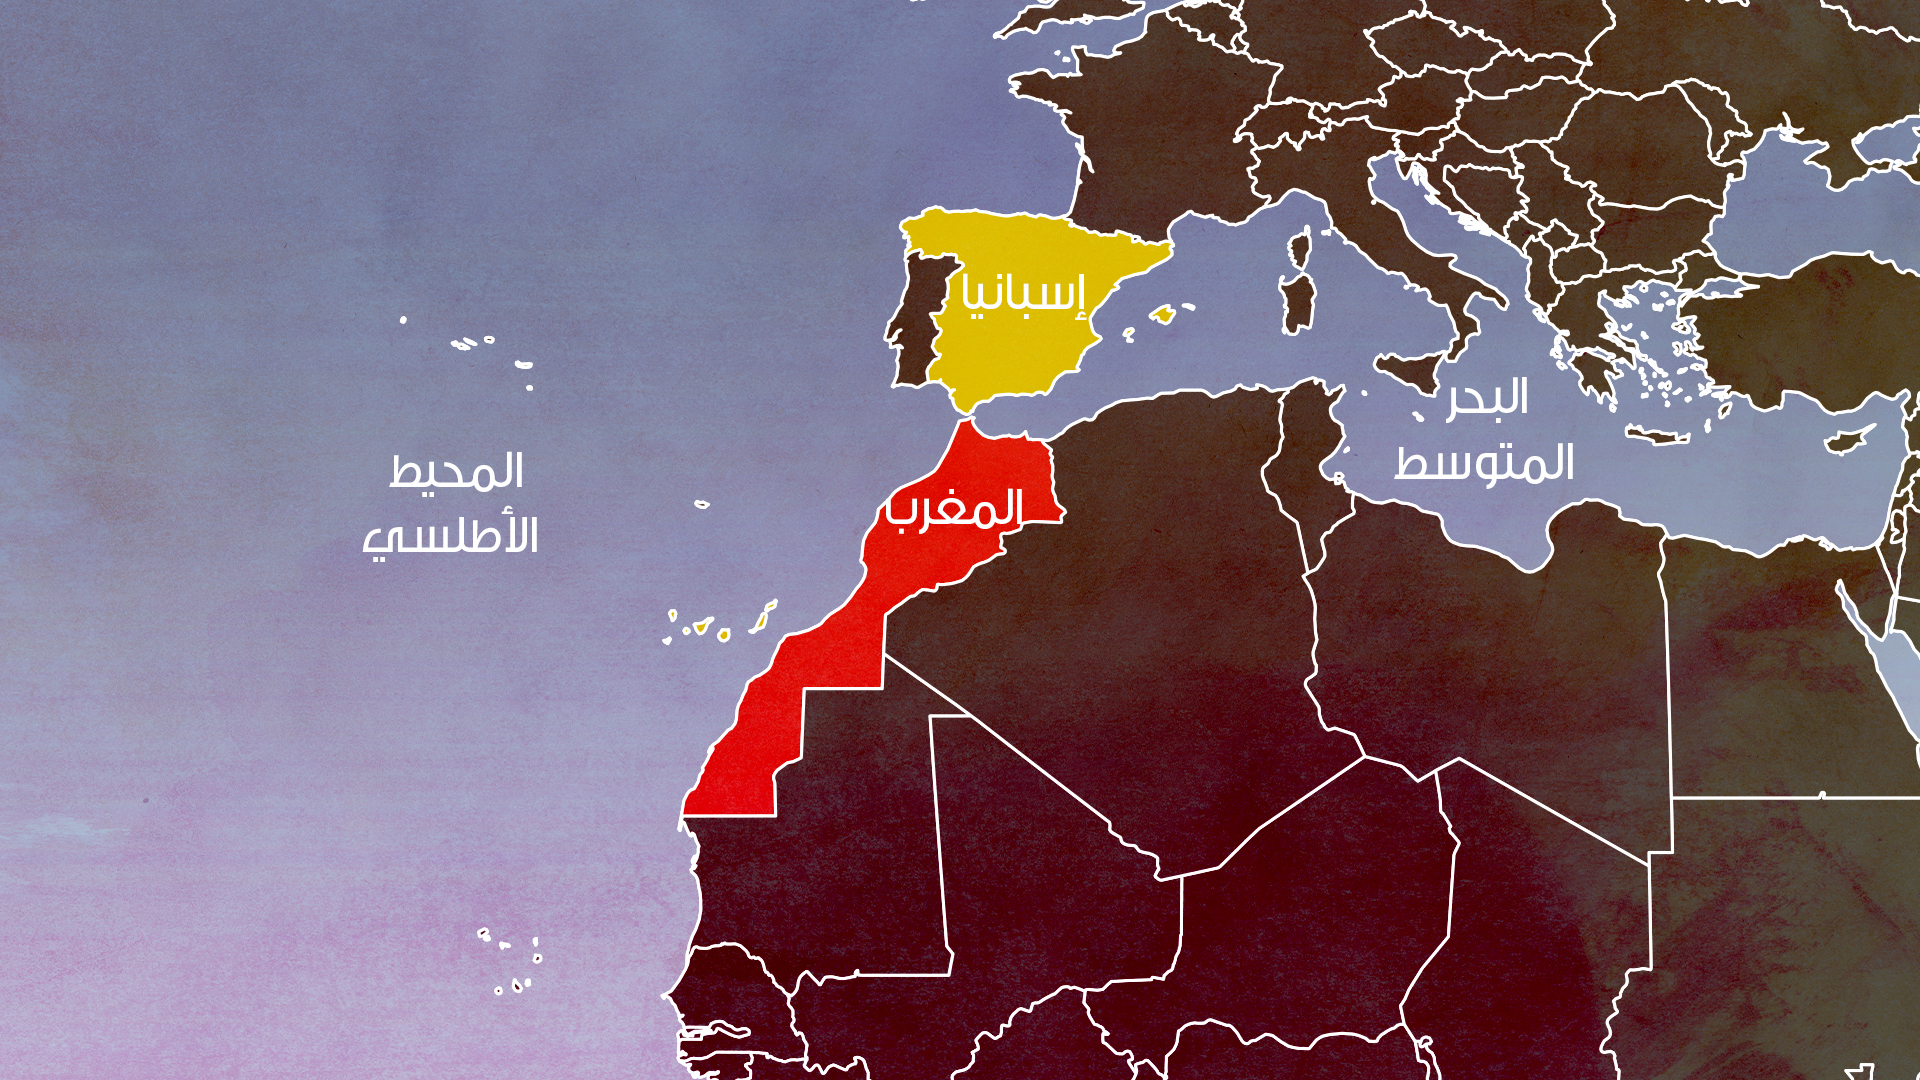 إسبانيا تؤكد أنها أبلغت الجزائر مسبقا بتغيير موقفها بشأن الصحراء المغربية